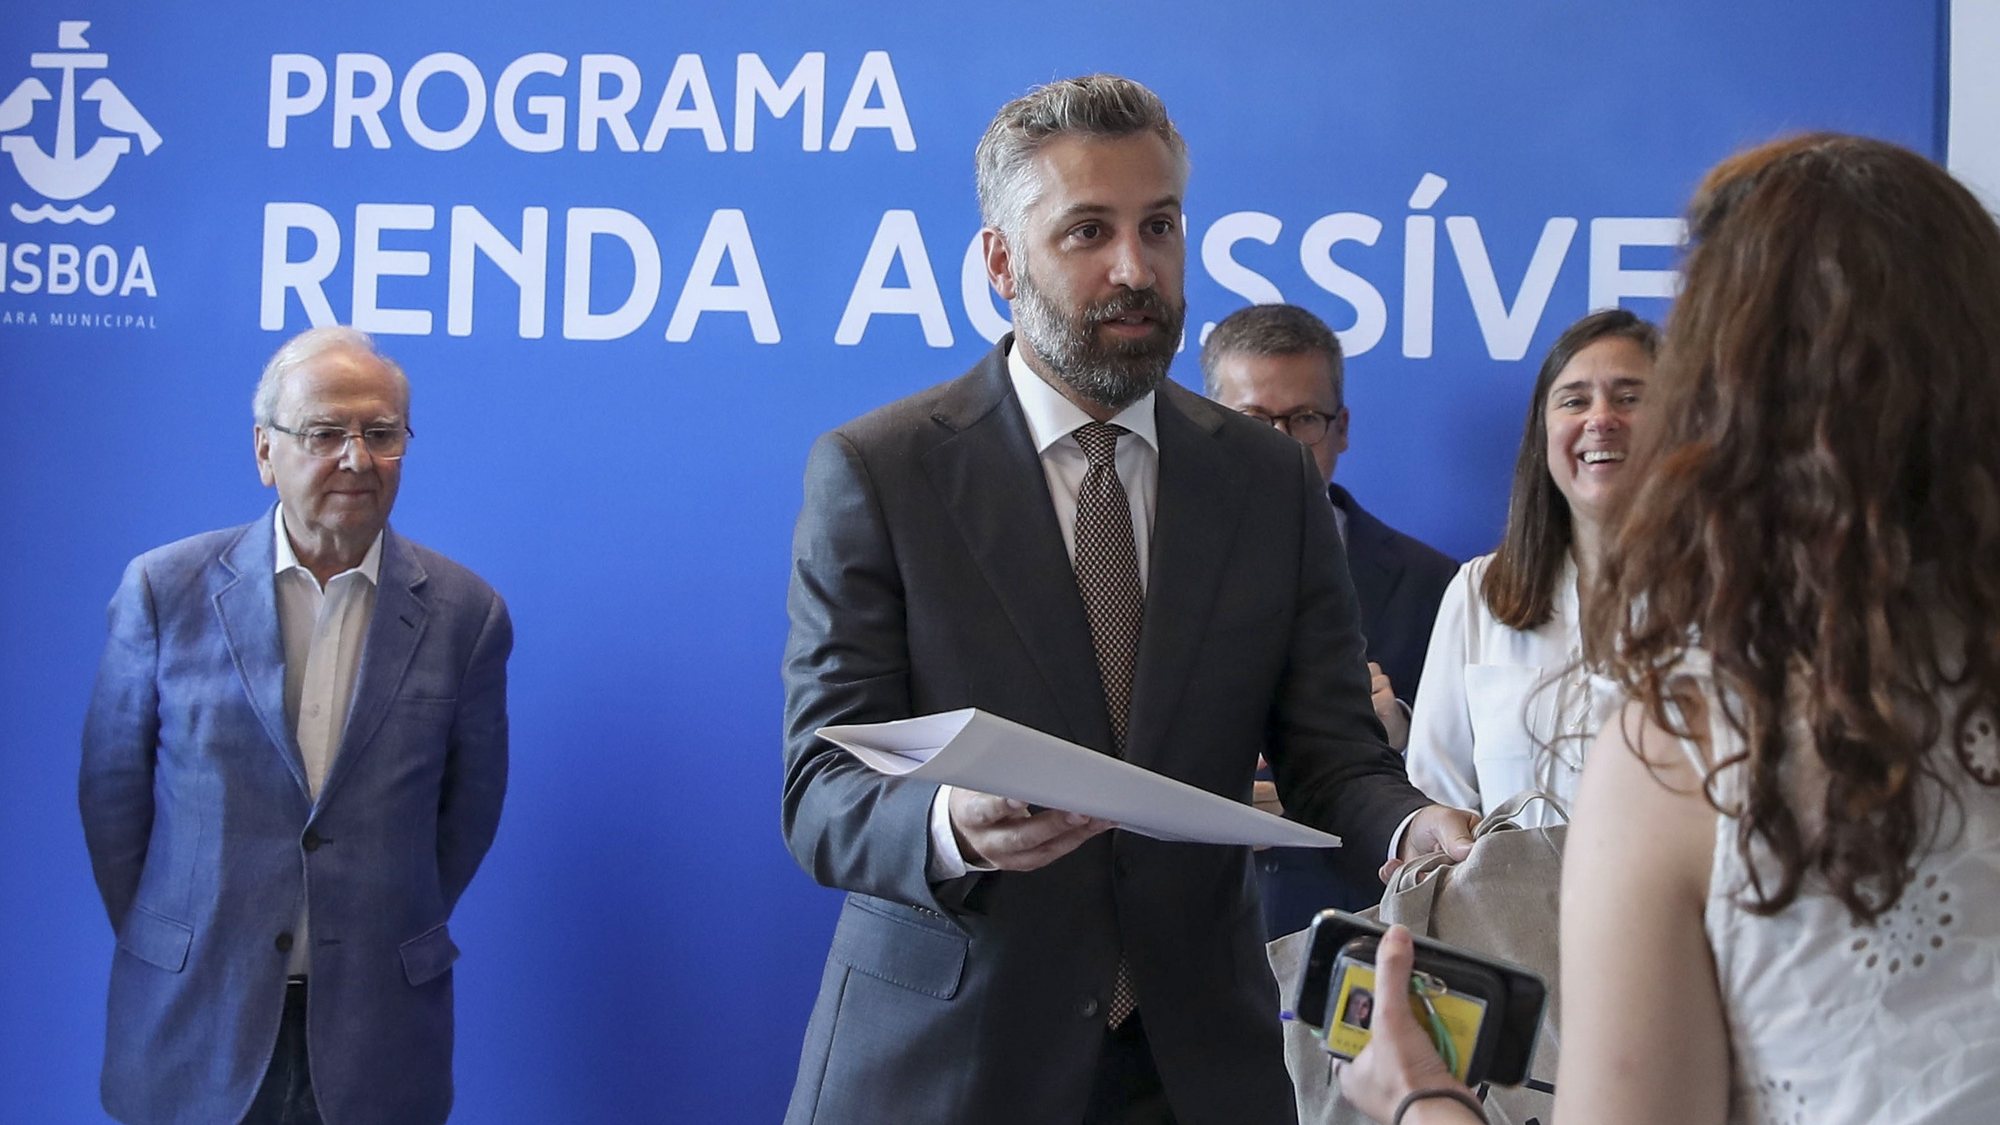 O ministro das Infraestruturas e Habitação, Pedro Nuno Santos, durante a cerimónia de entrega de 128 chaves de Habitação em Renda Acessível que decorreu em Lisboa, 25 de julho de 2022. ANTÓNIO COTRIM/LUSA